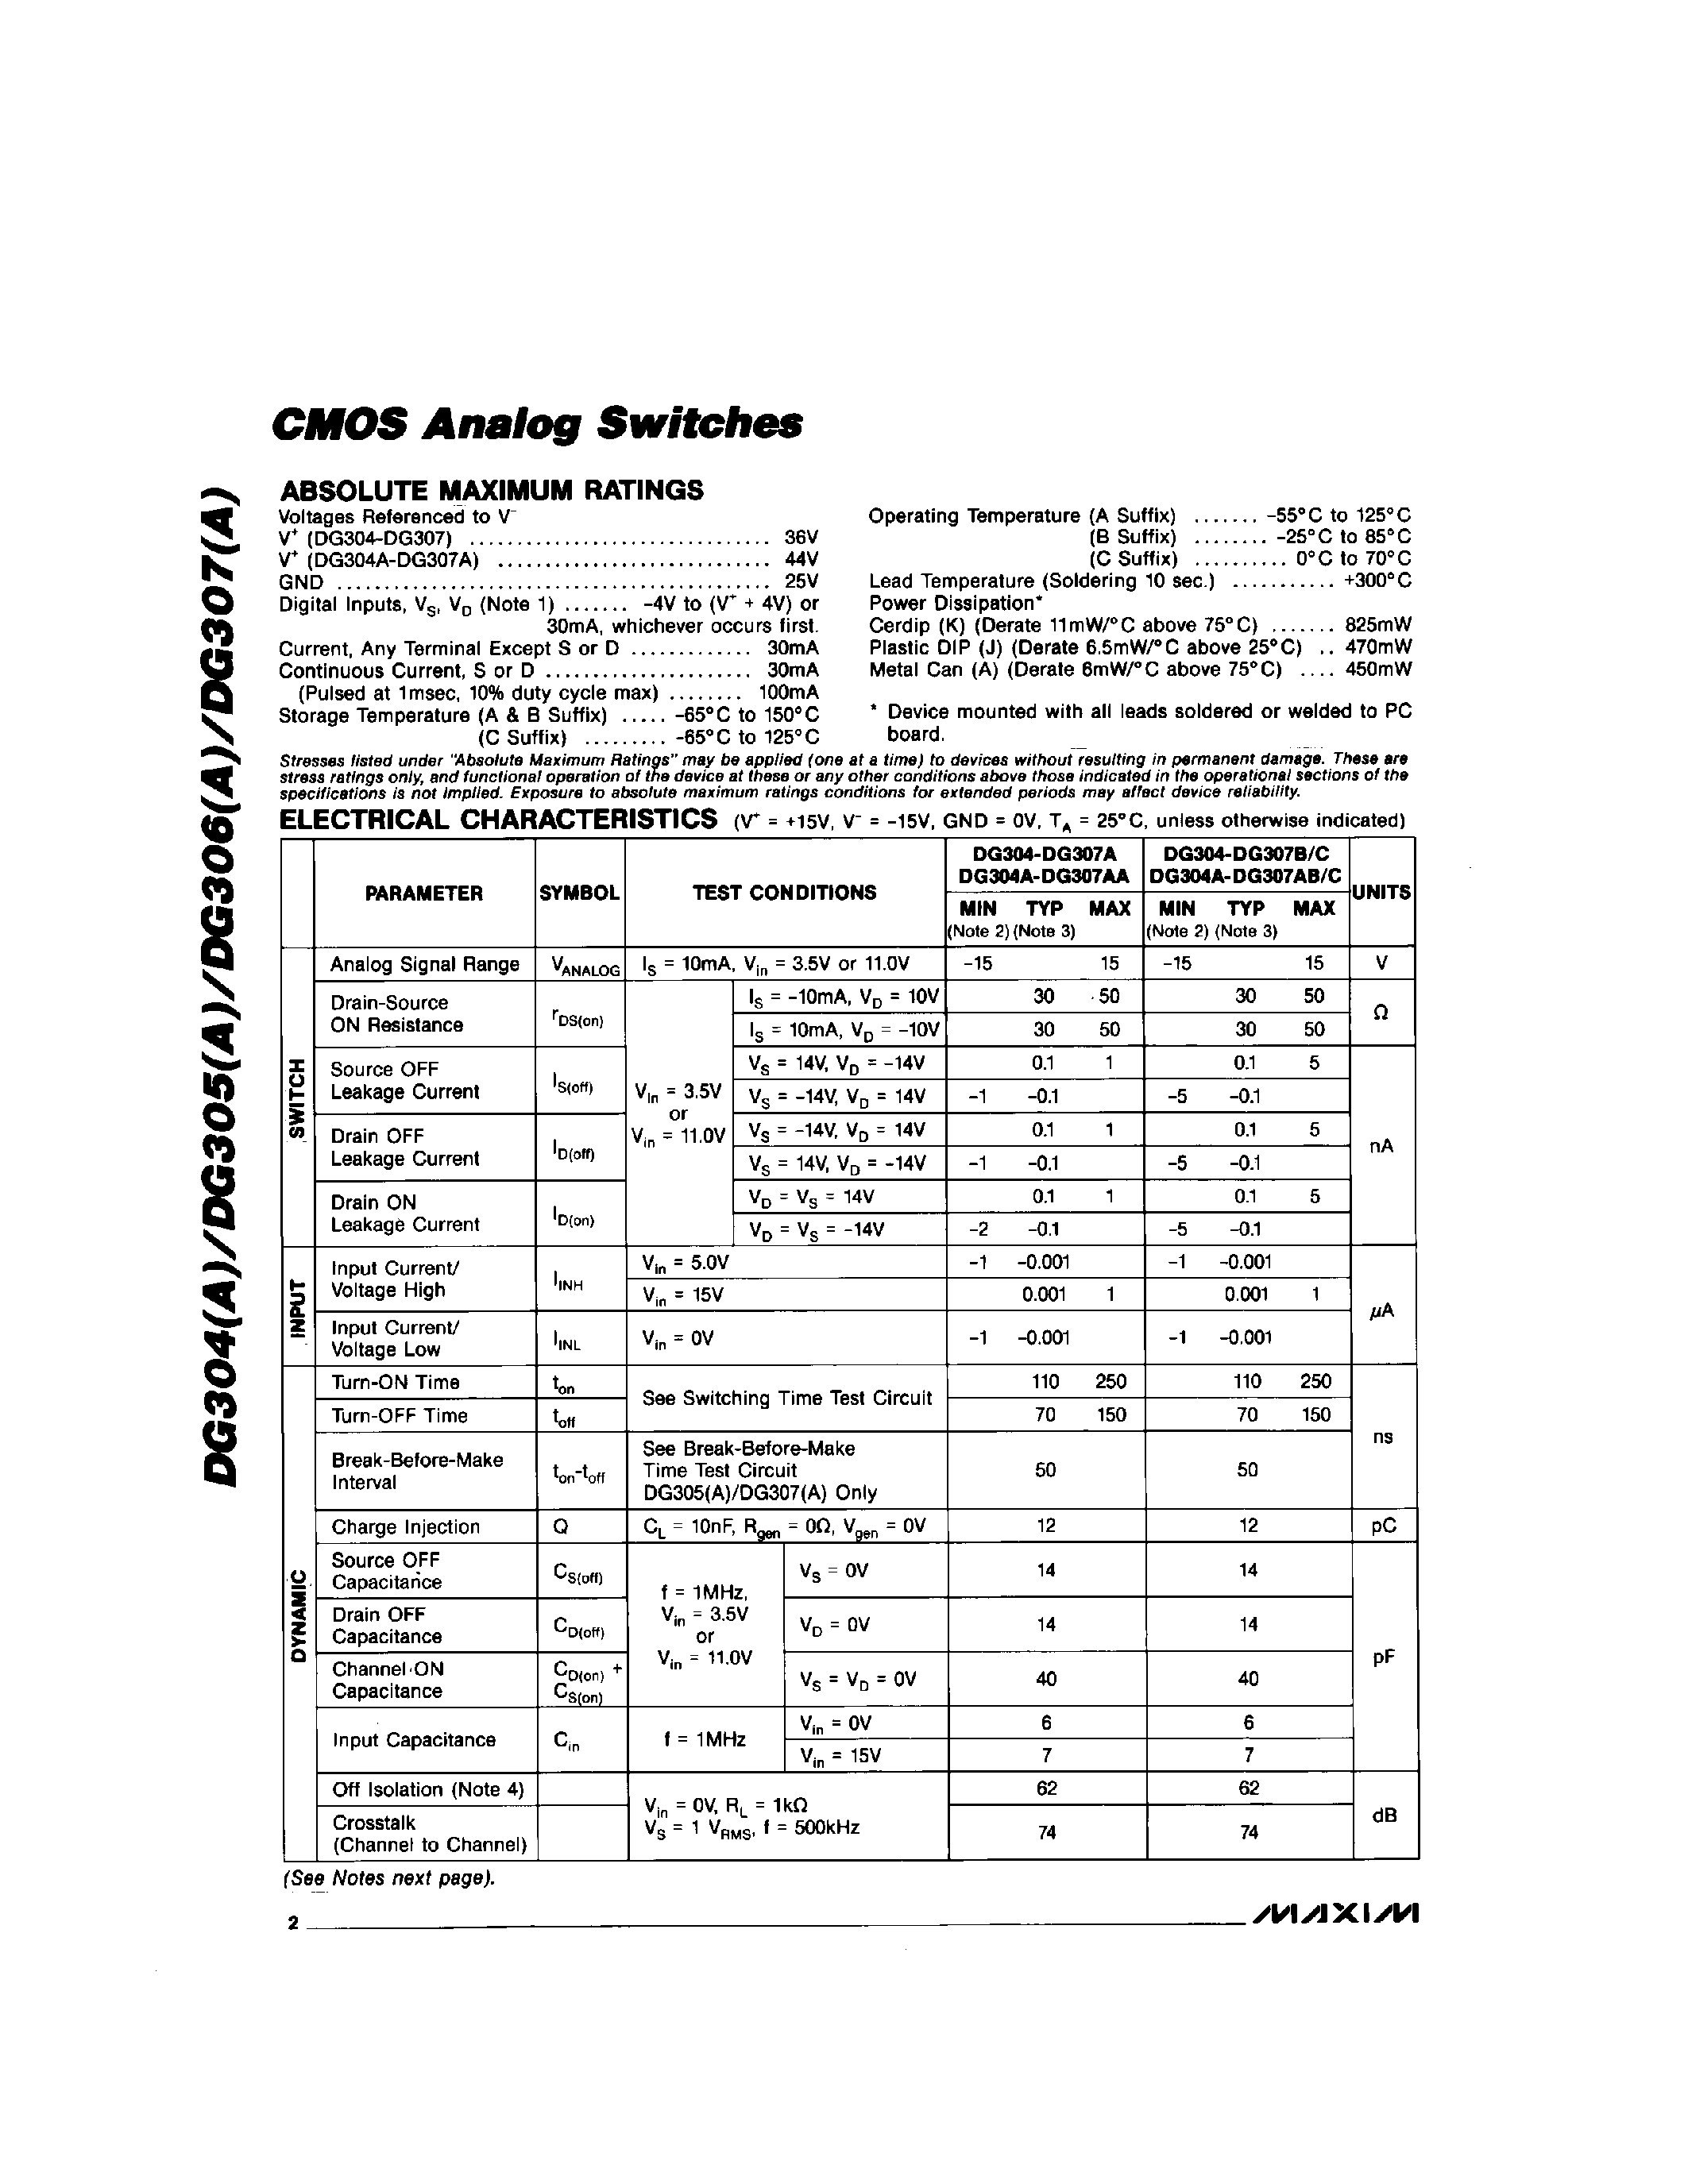 Даташит DG305C/D - CMOS Analog Switchs страница 2